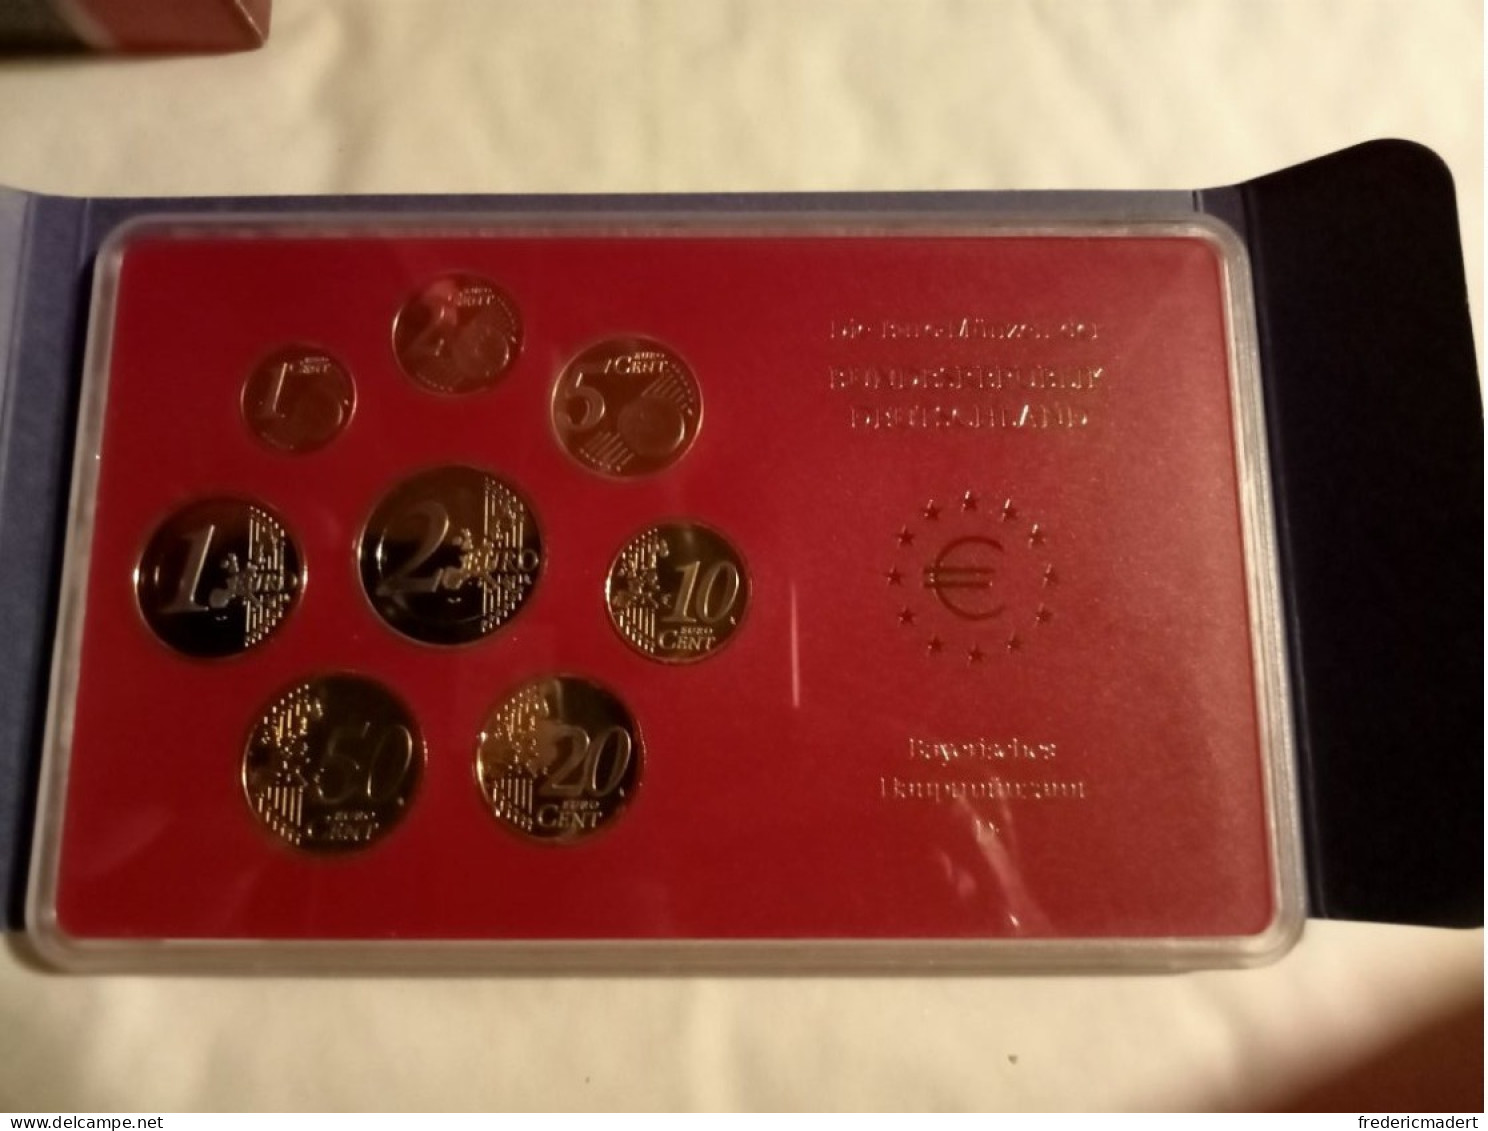 Plaquette Euro-Münzen Bundesepublik Deutschland - Coffret München D 2004 - Sammlungen